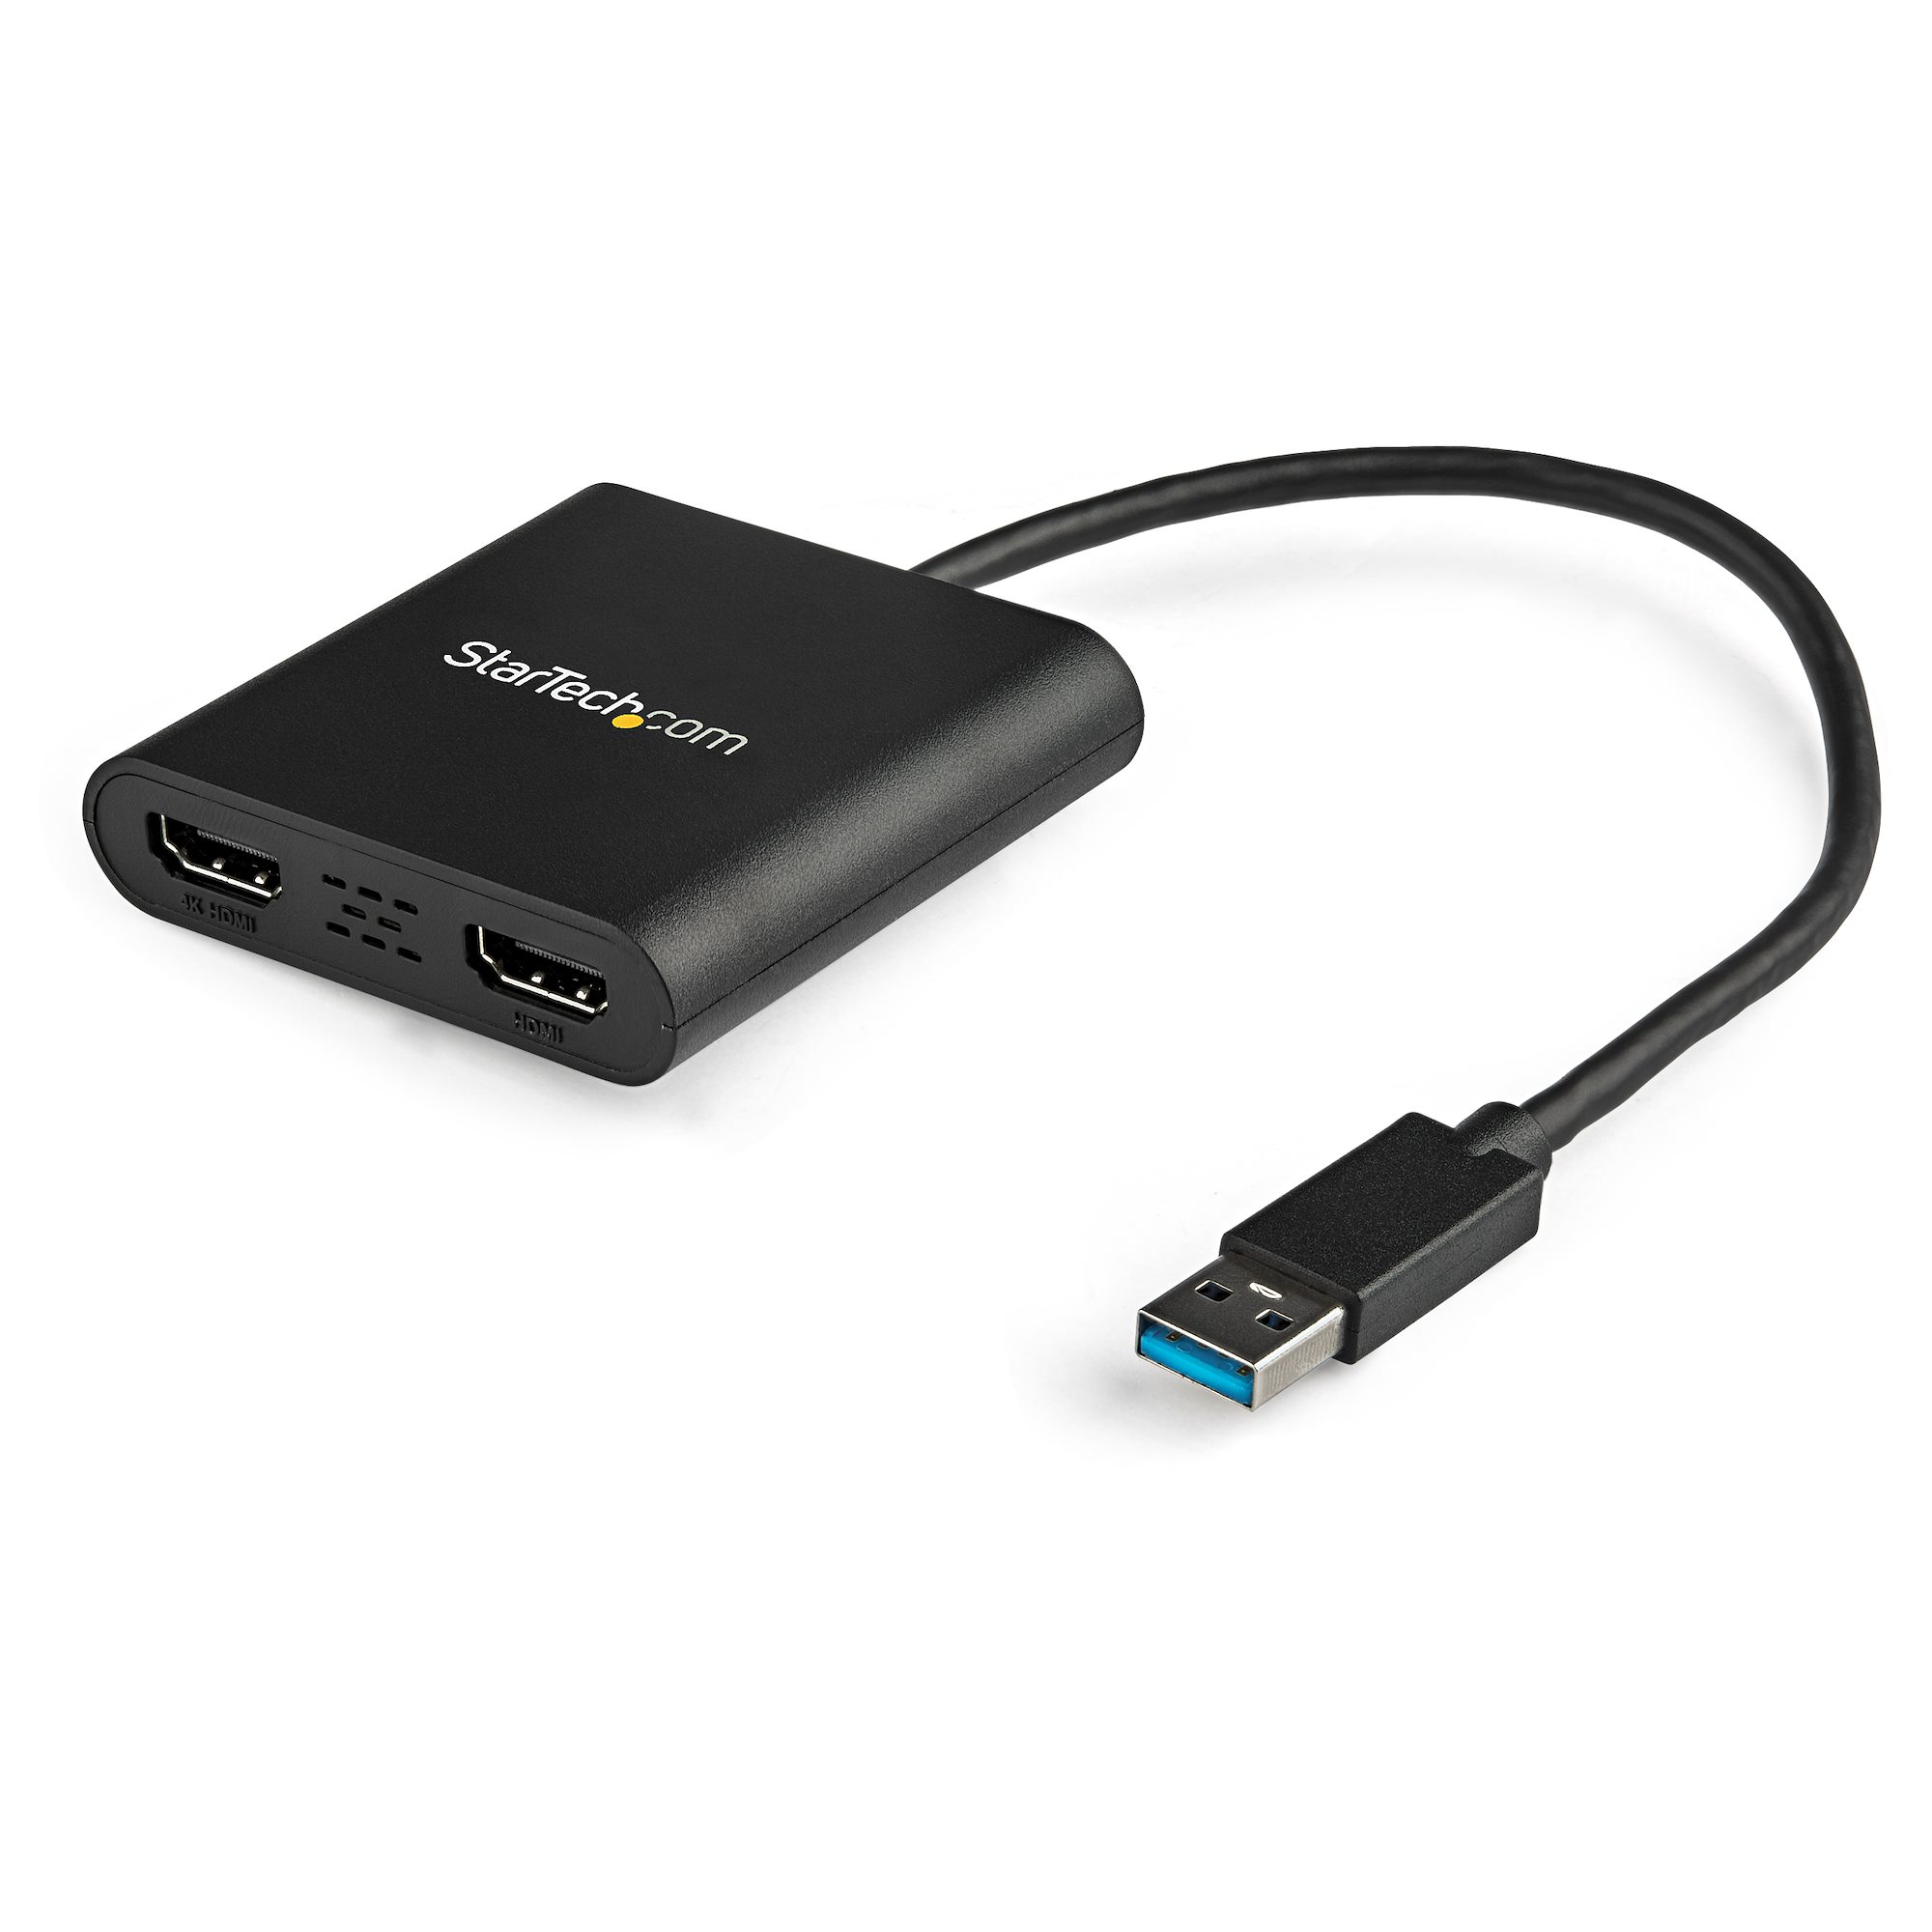 ADAPTADOR USB-C A HDMI / USB TYPE C / USB 3.0 4K 30HZ